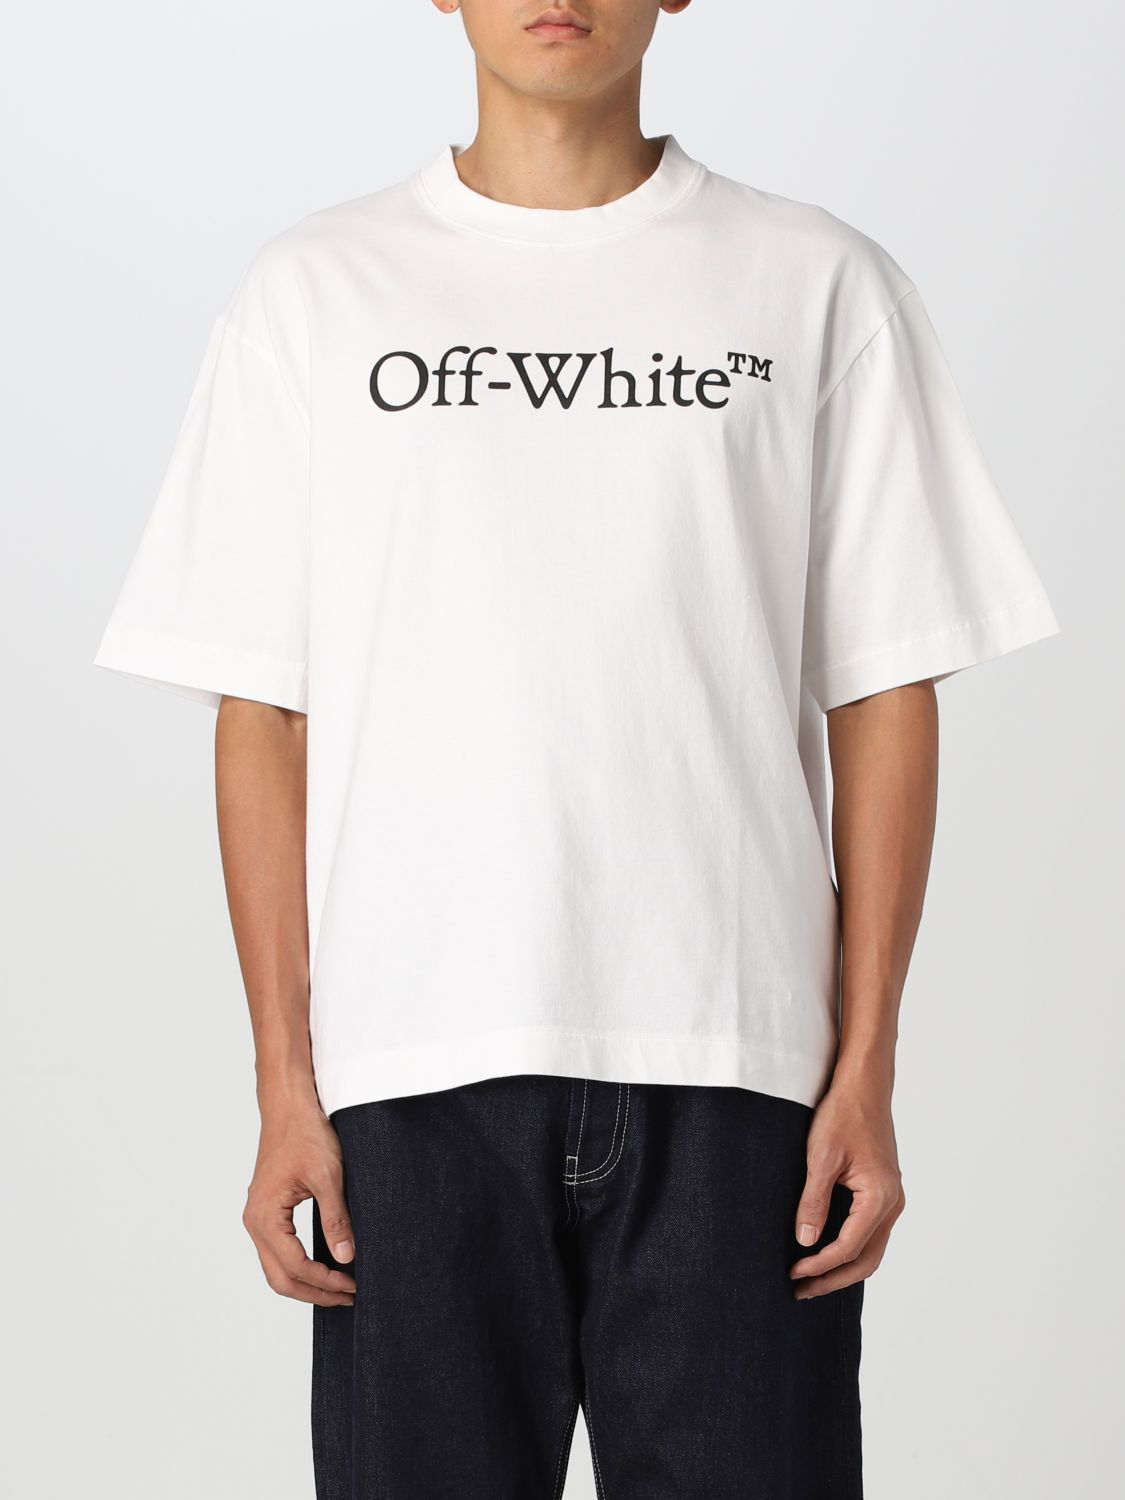 オフホワイト OMAA120S22JER003 グラフィックデザインTシャツ メンズ ...